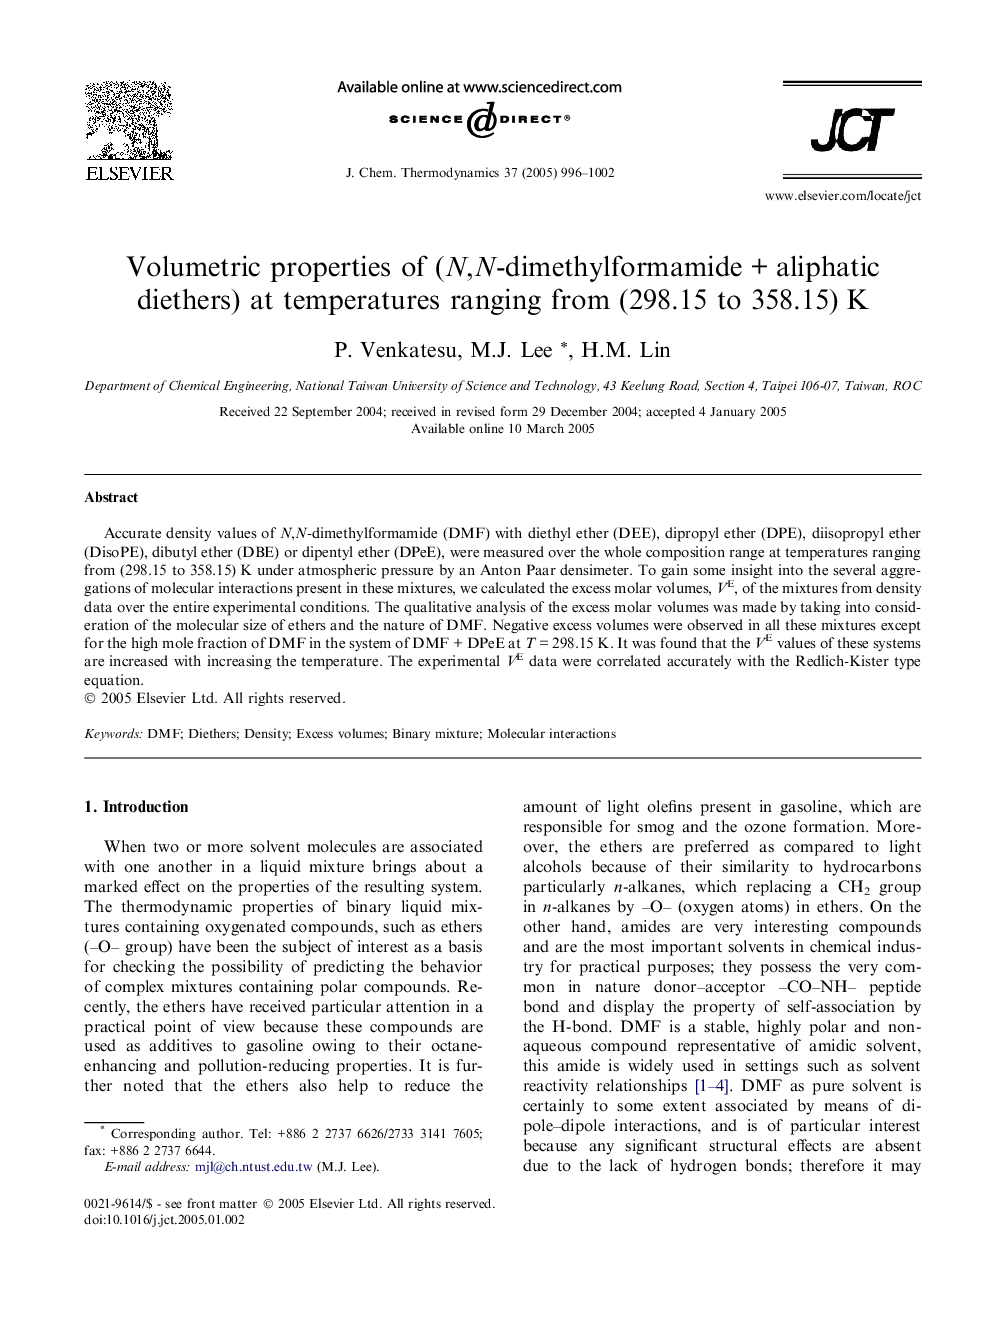 Volumetric properties of (N,N-dimethylformamideÂ +Â aliphatic diethers) at temperatures ranging from (298.15 to 358.15)Â K